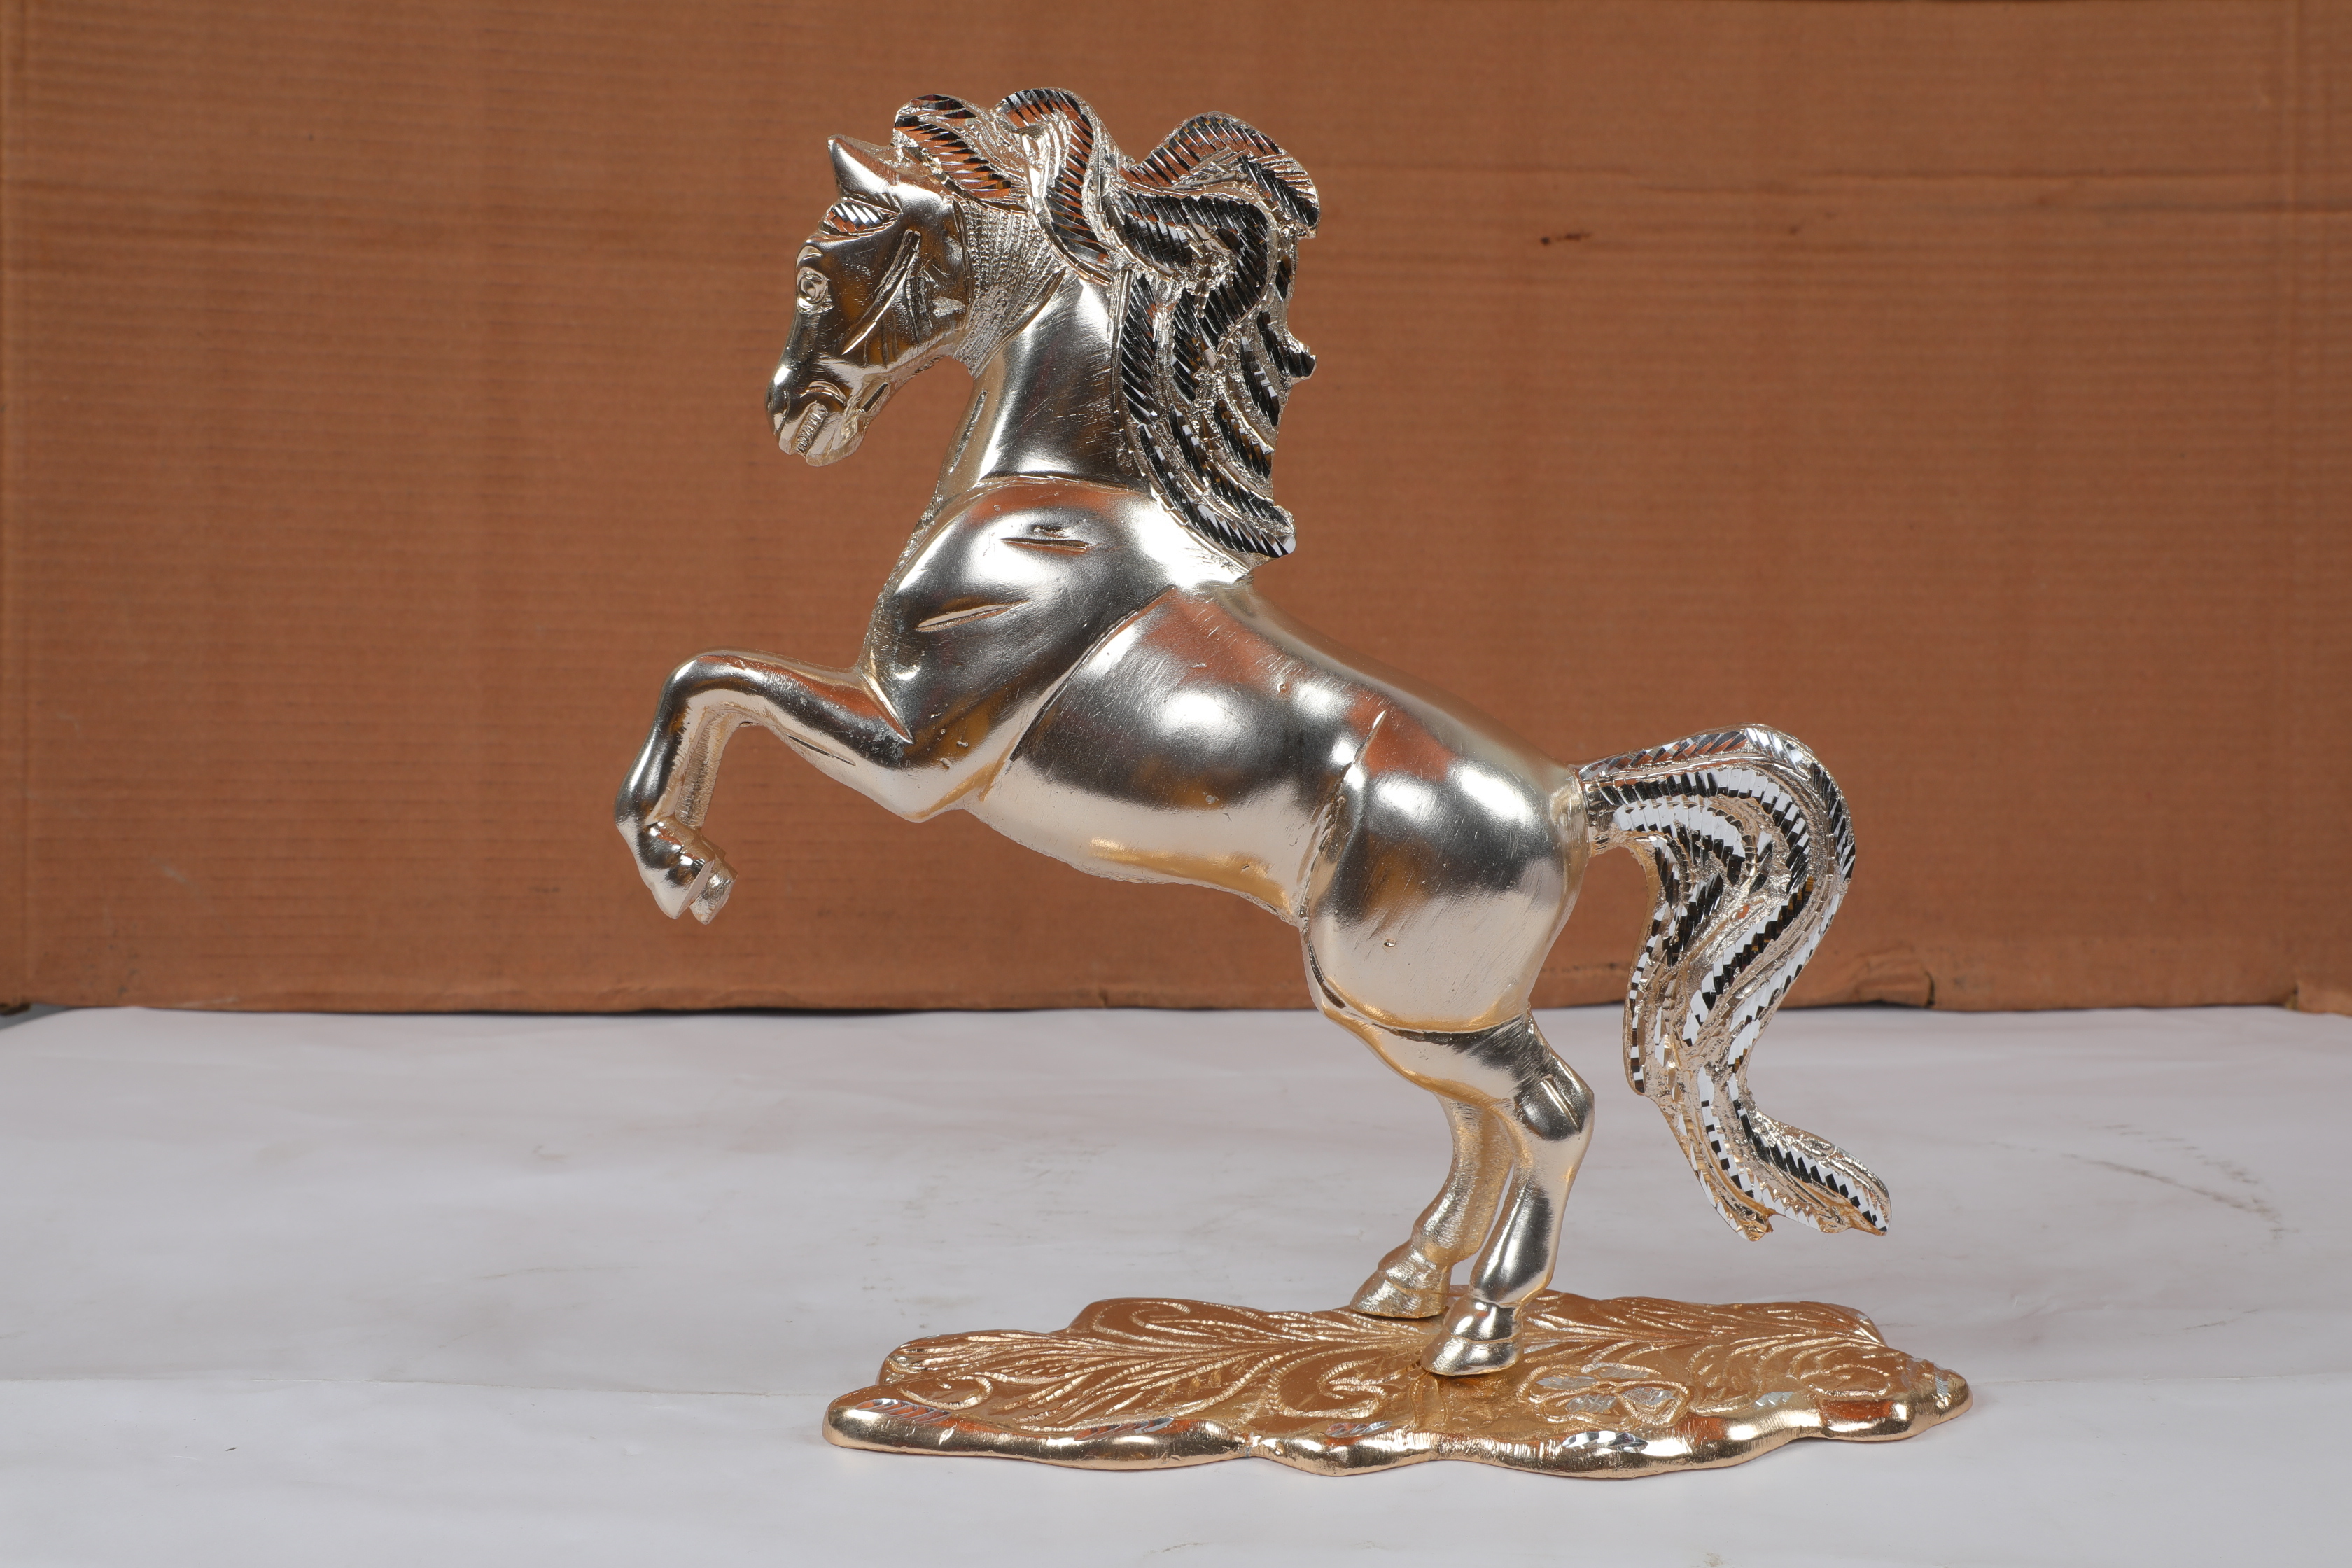 Horse Metal Statue (Mix)